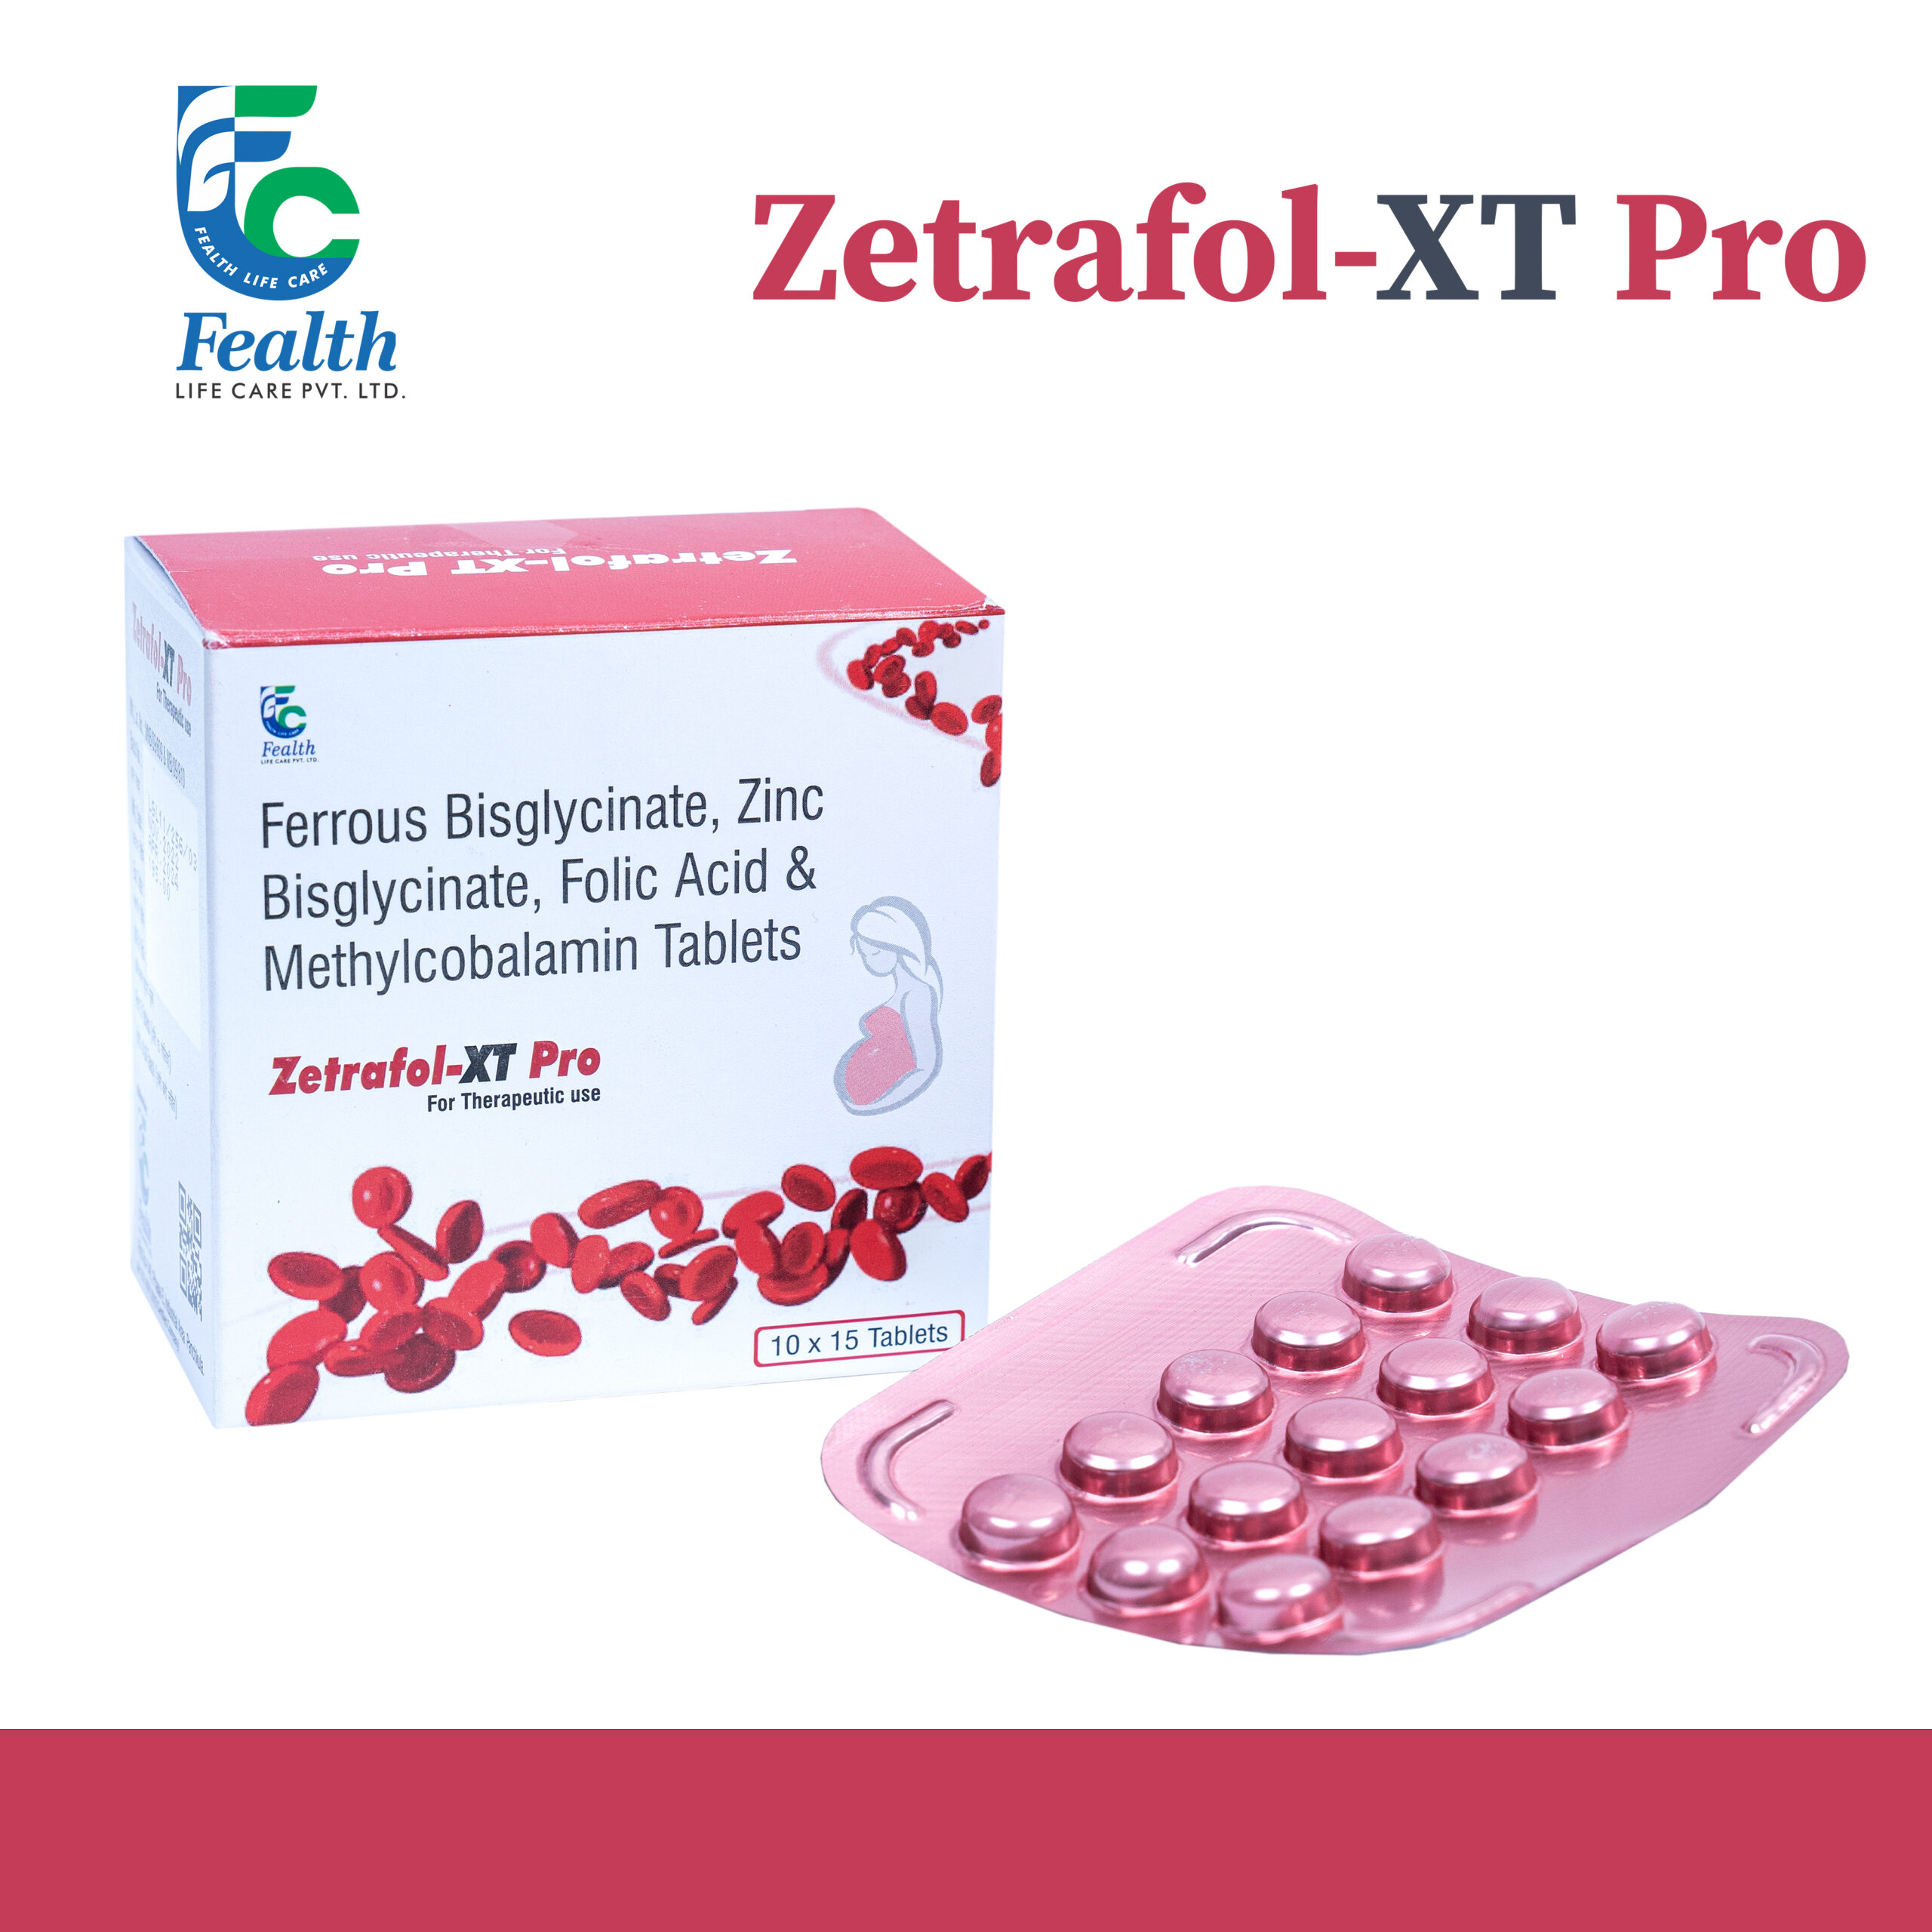 Zetrafol-XT Pro